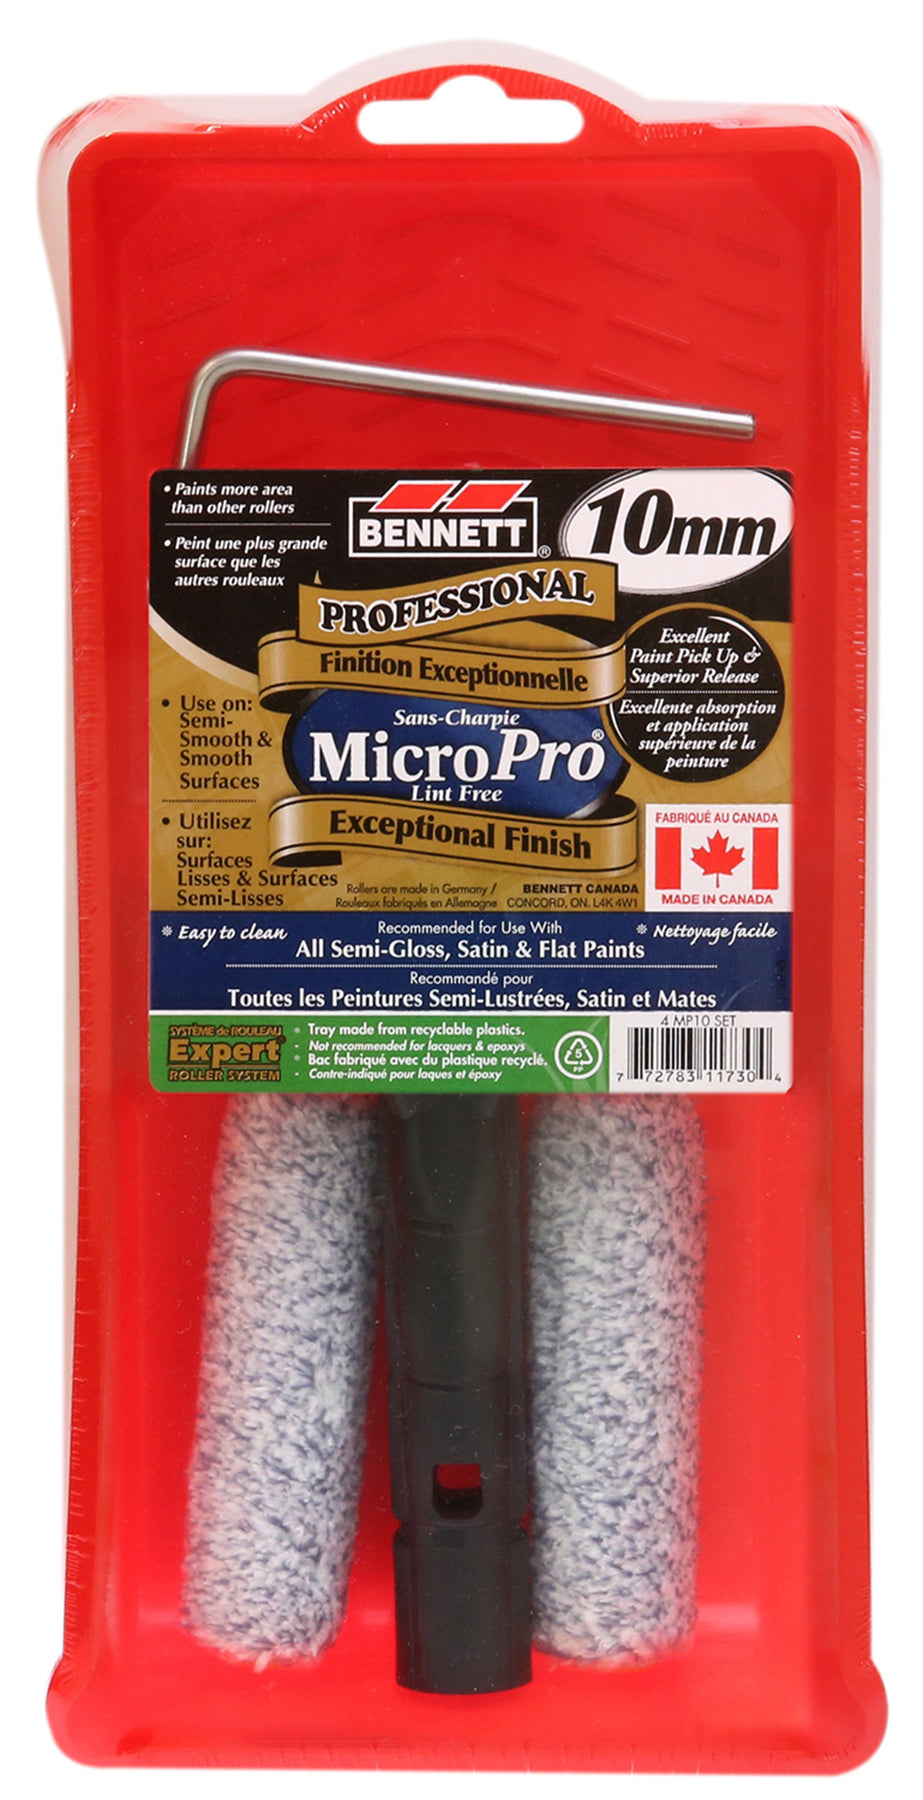 ست غلتک و سینی 4 اینچی Bennett Micropro 10mm